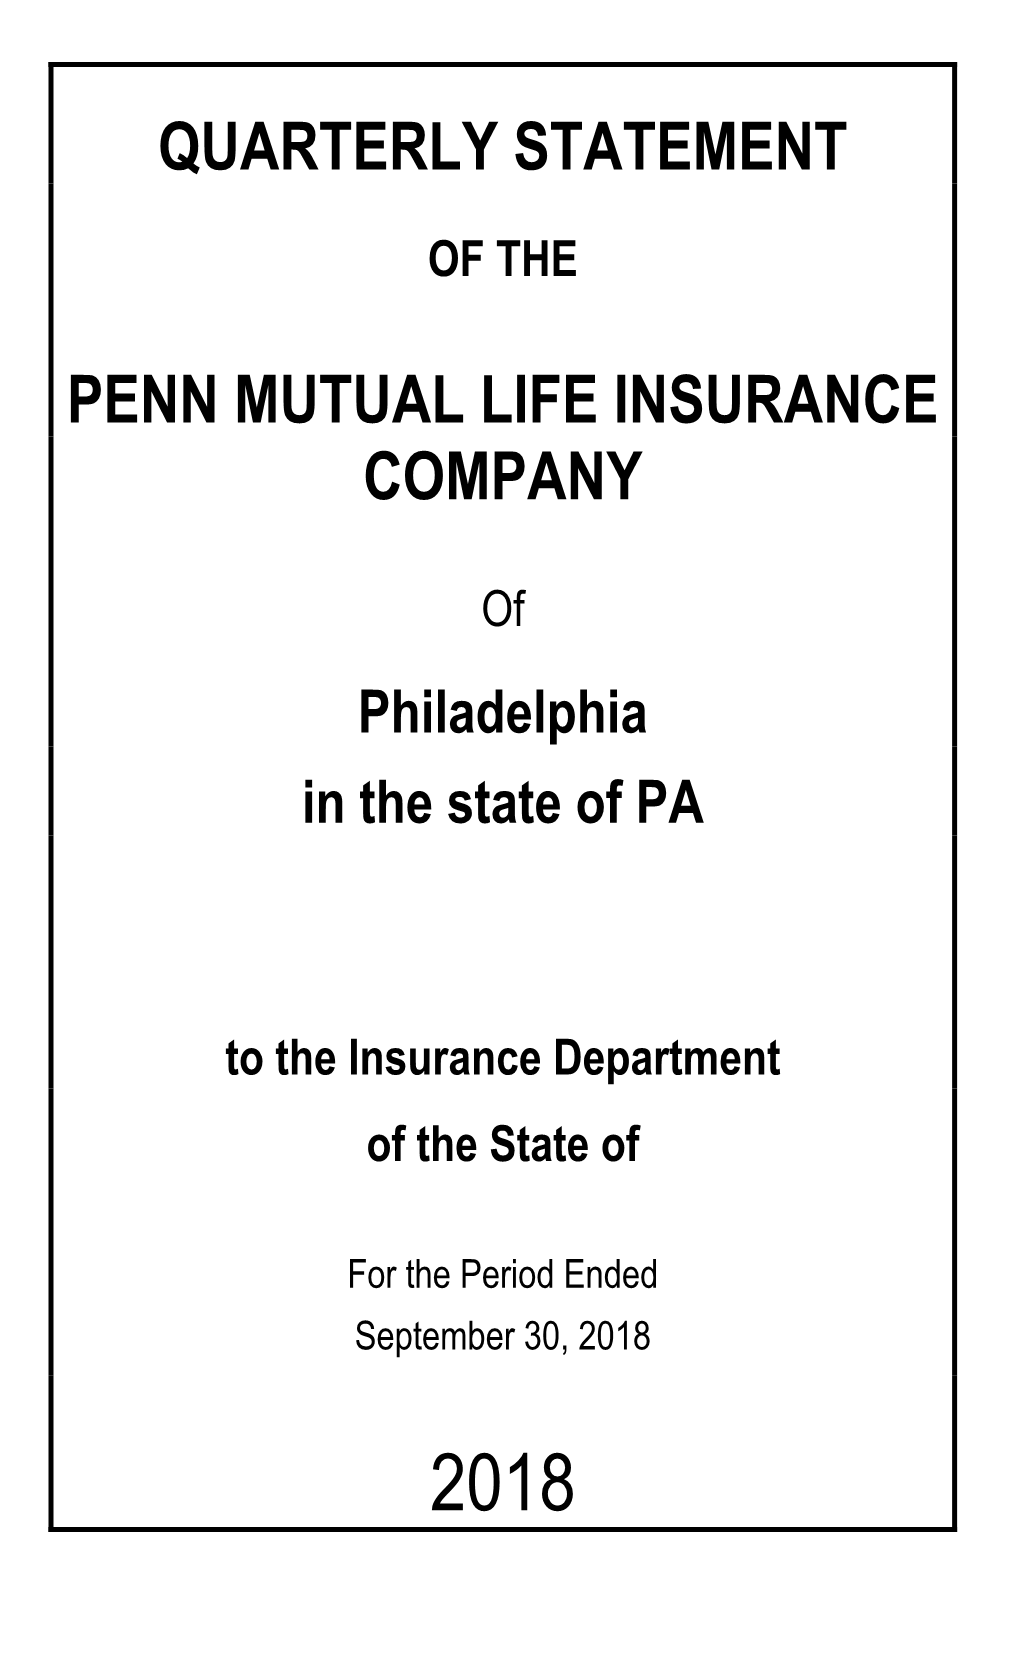 Quarterly Statement Penn Mutual Life Insurance